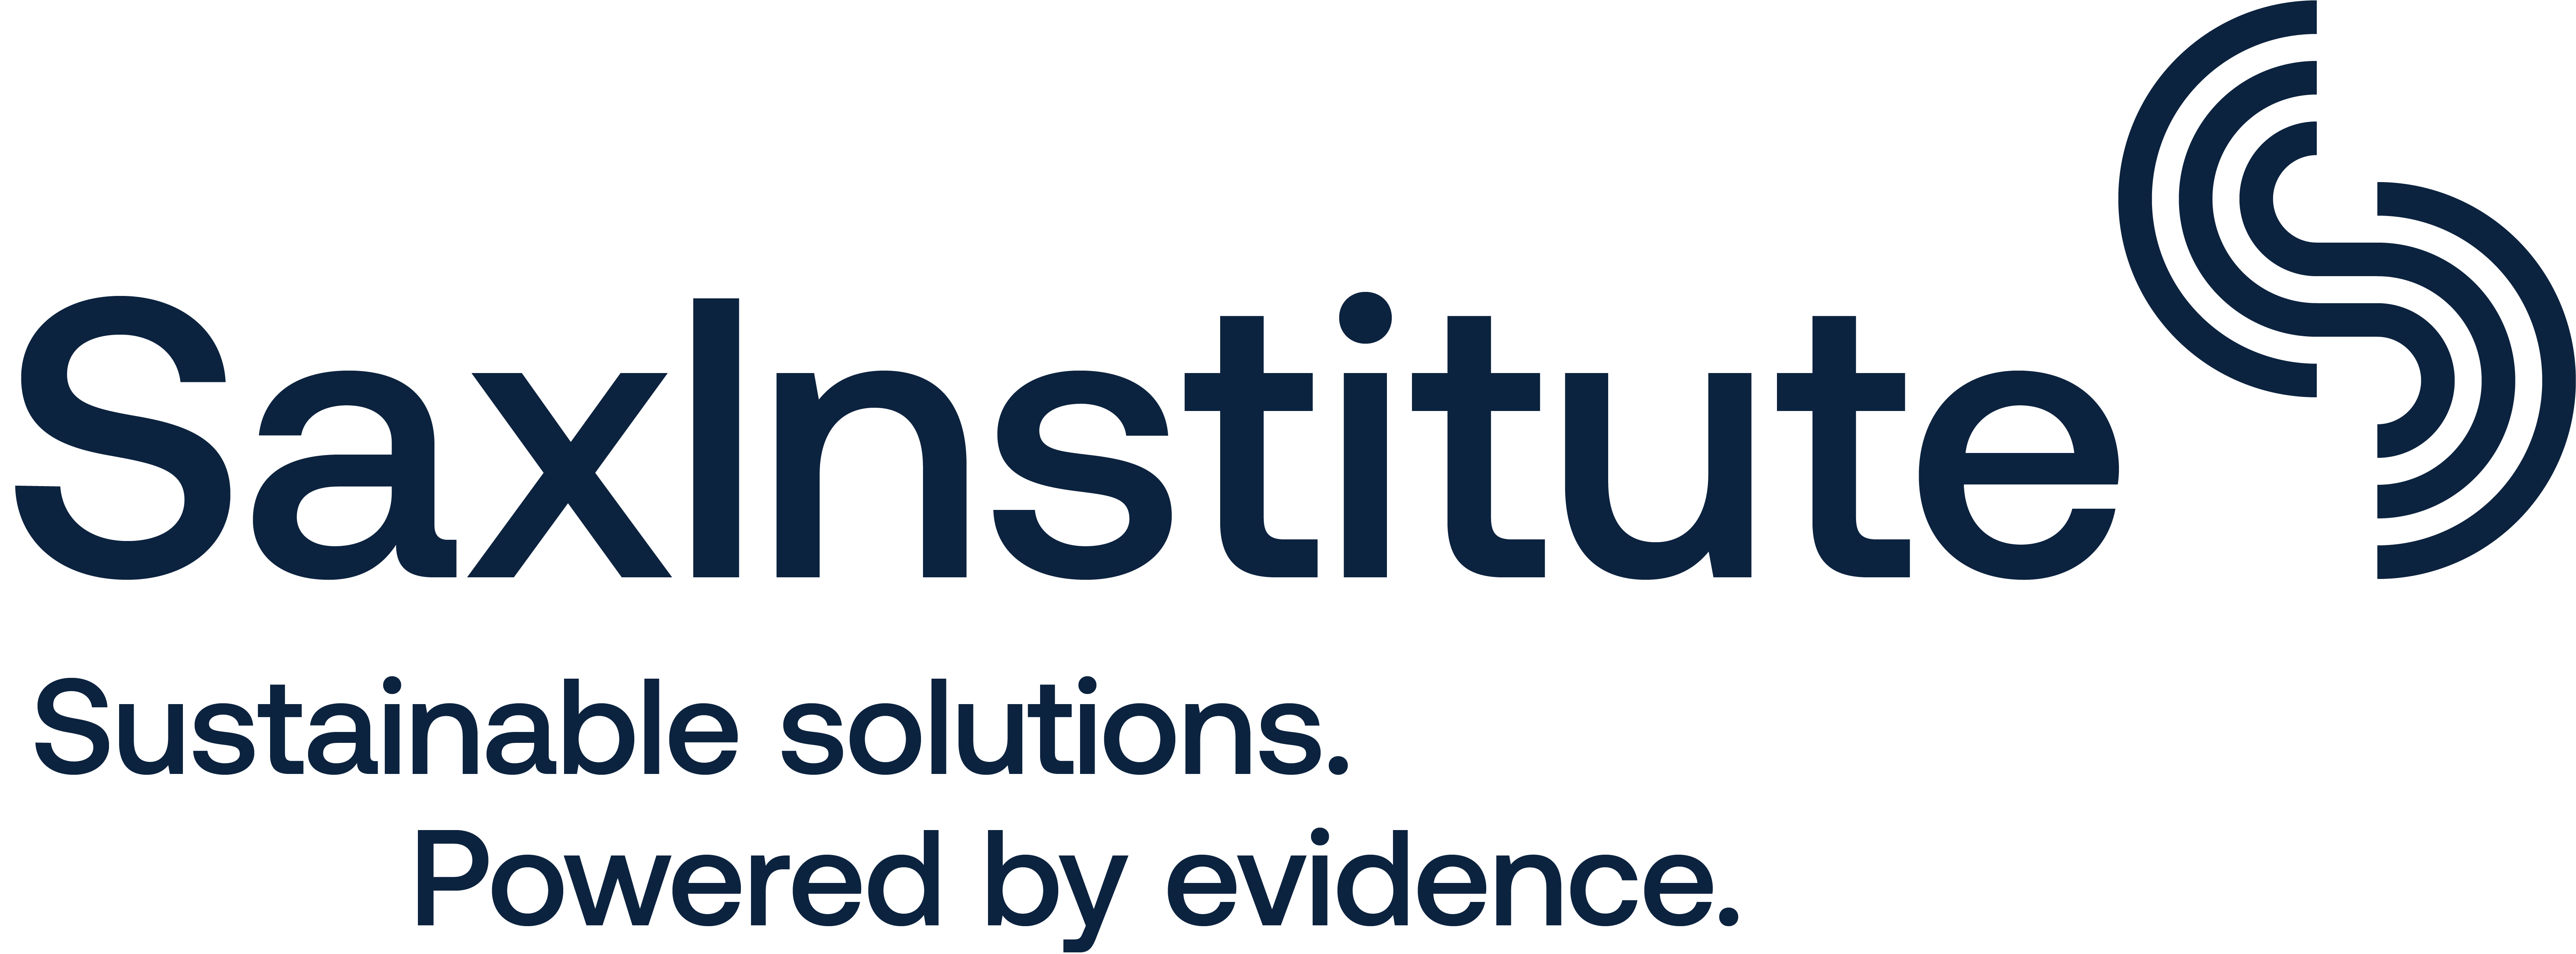 sax-institute-logo